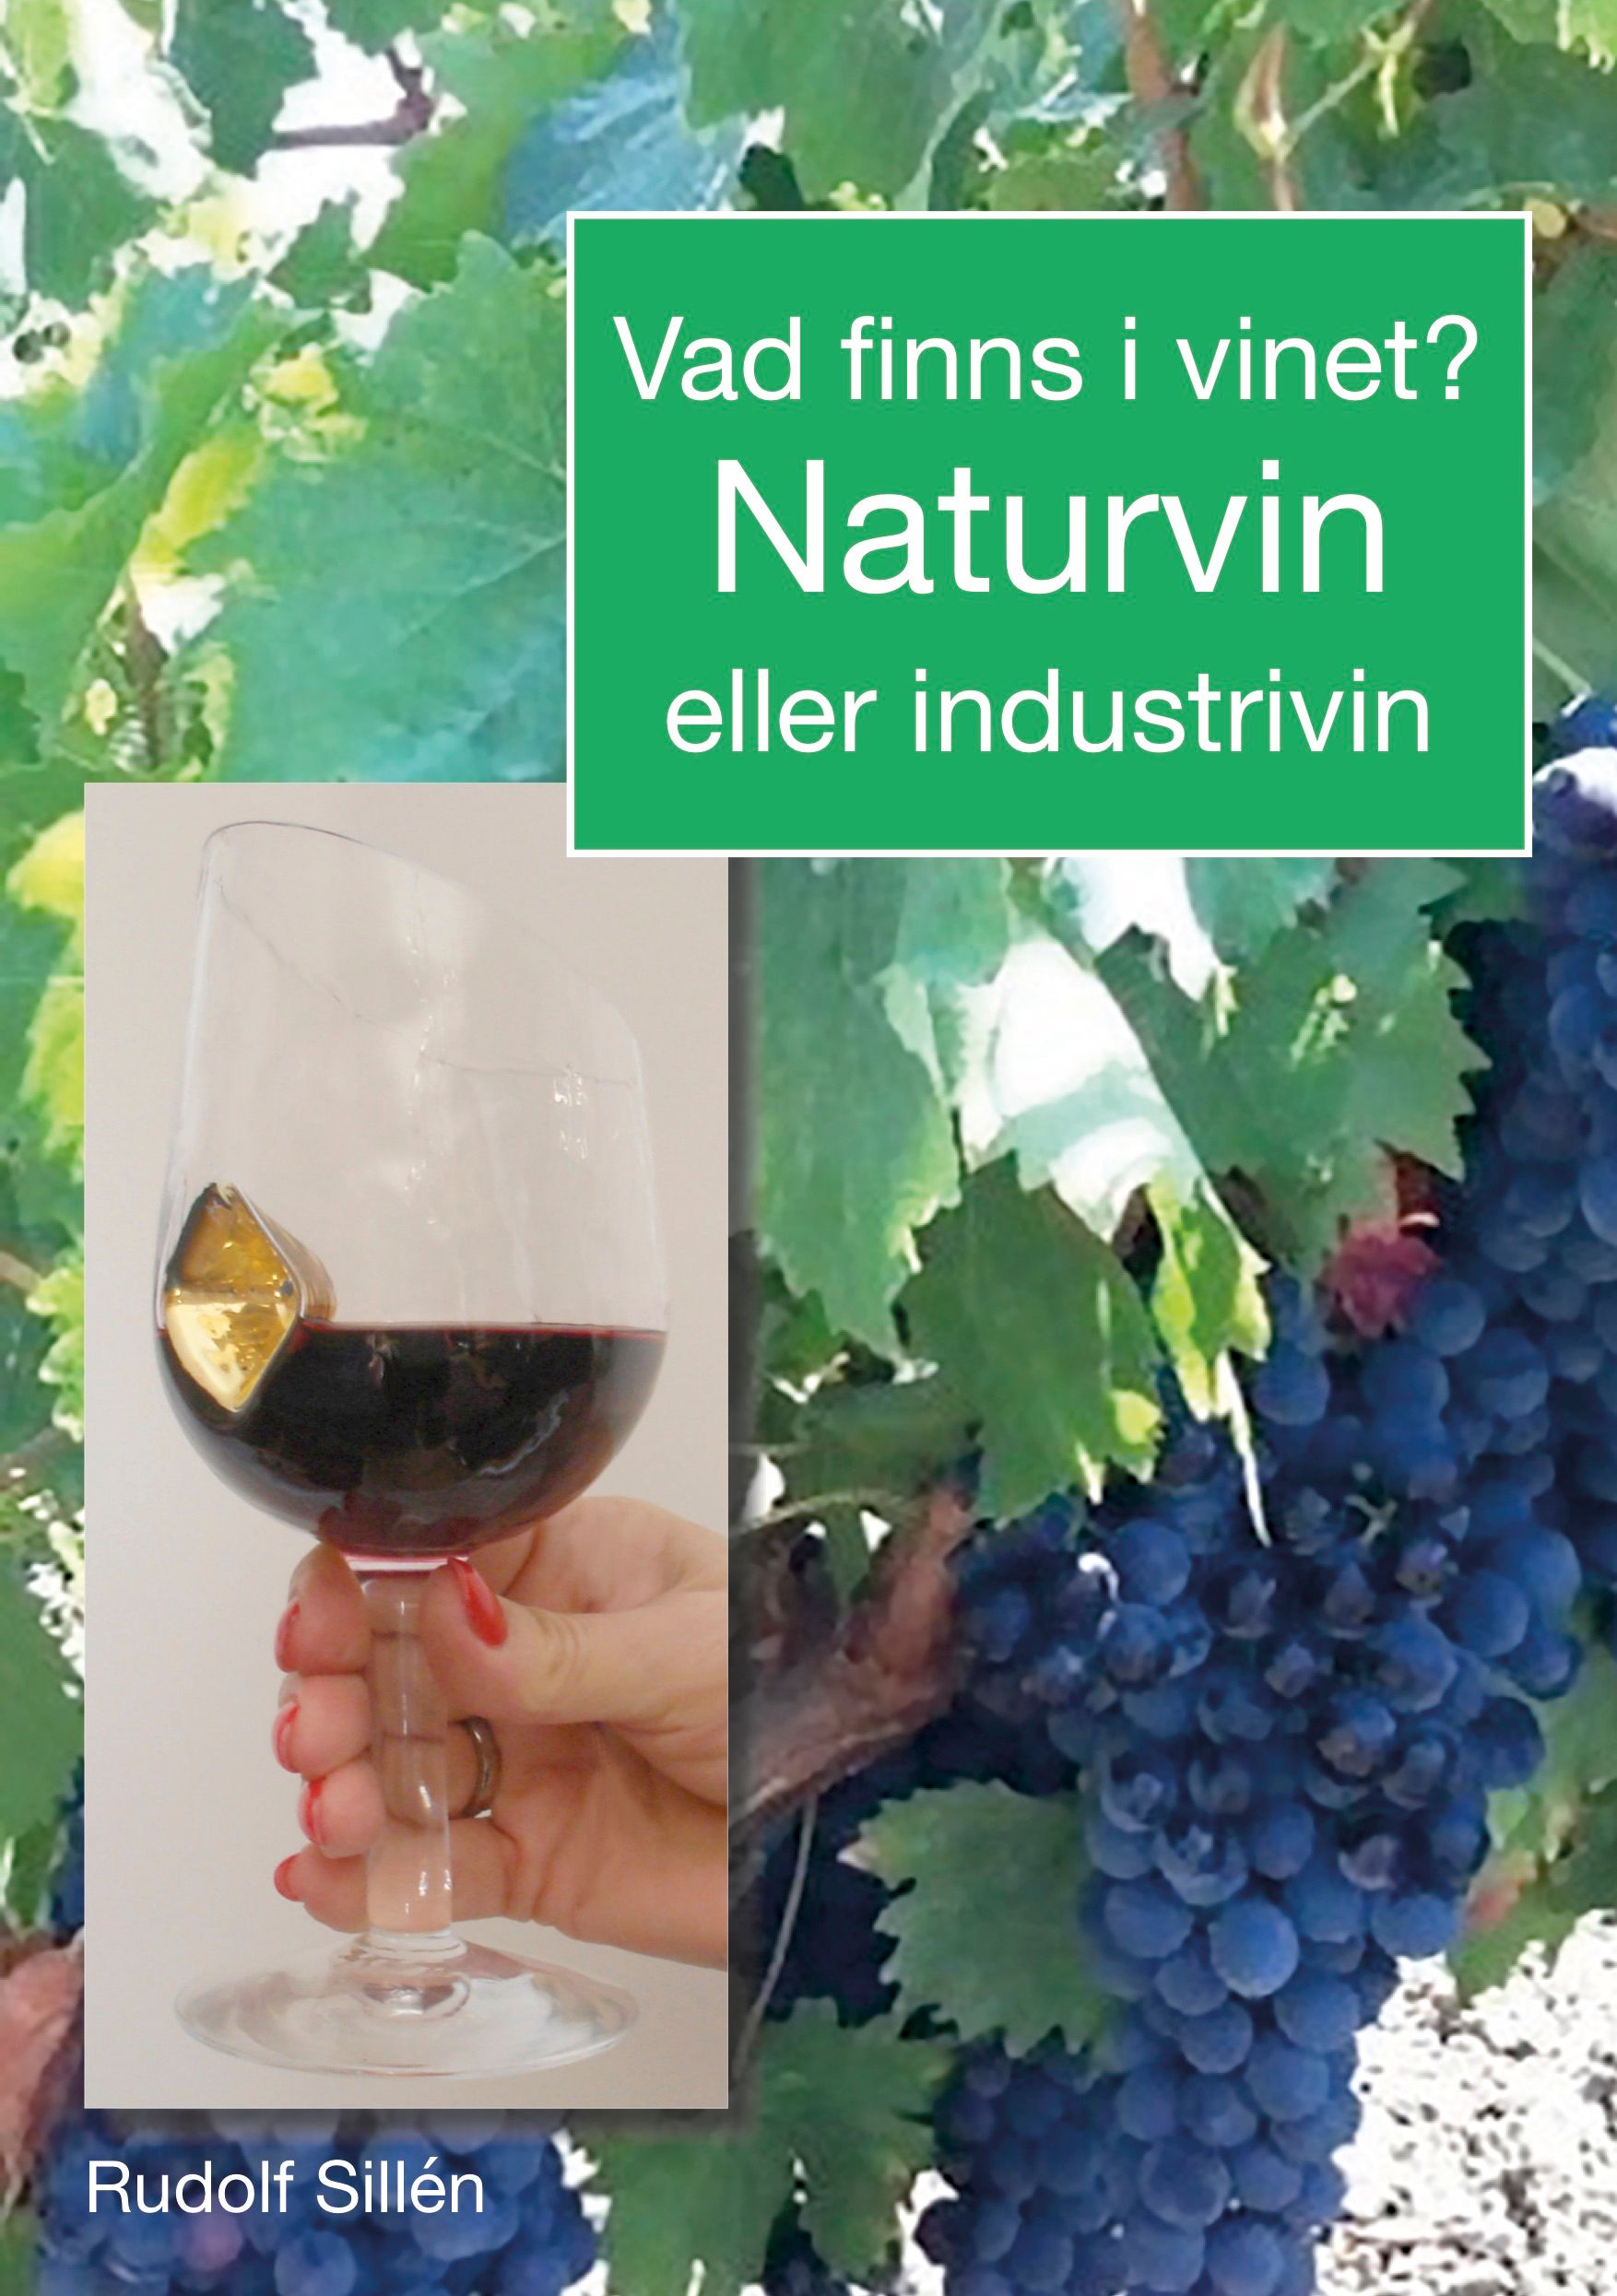 Vad finns i vinet?, e-bok av Rudolf Sillén